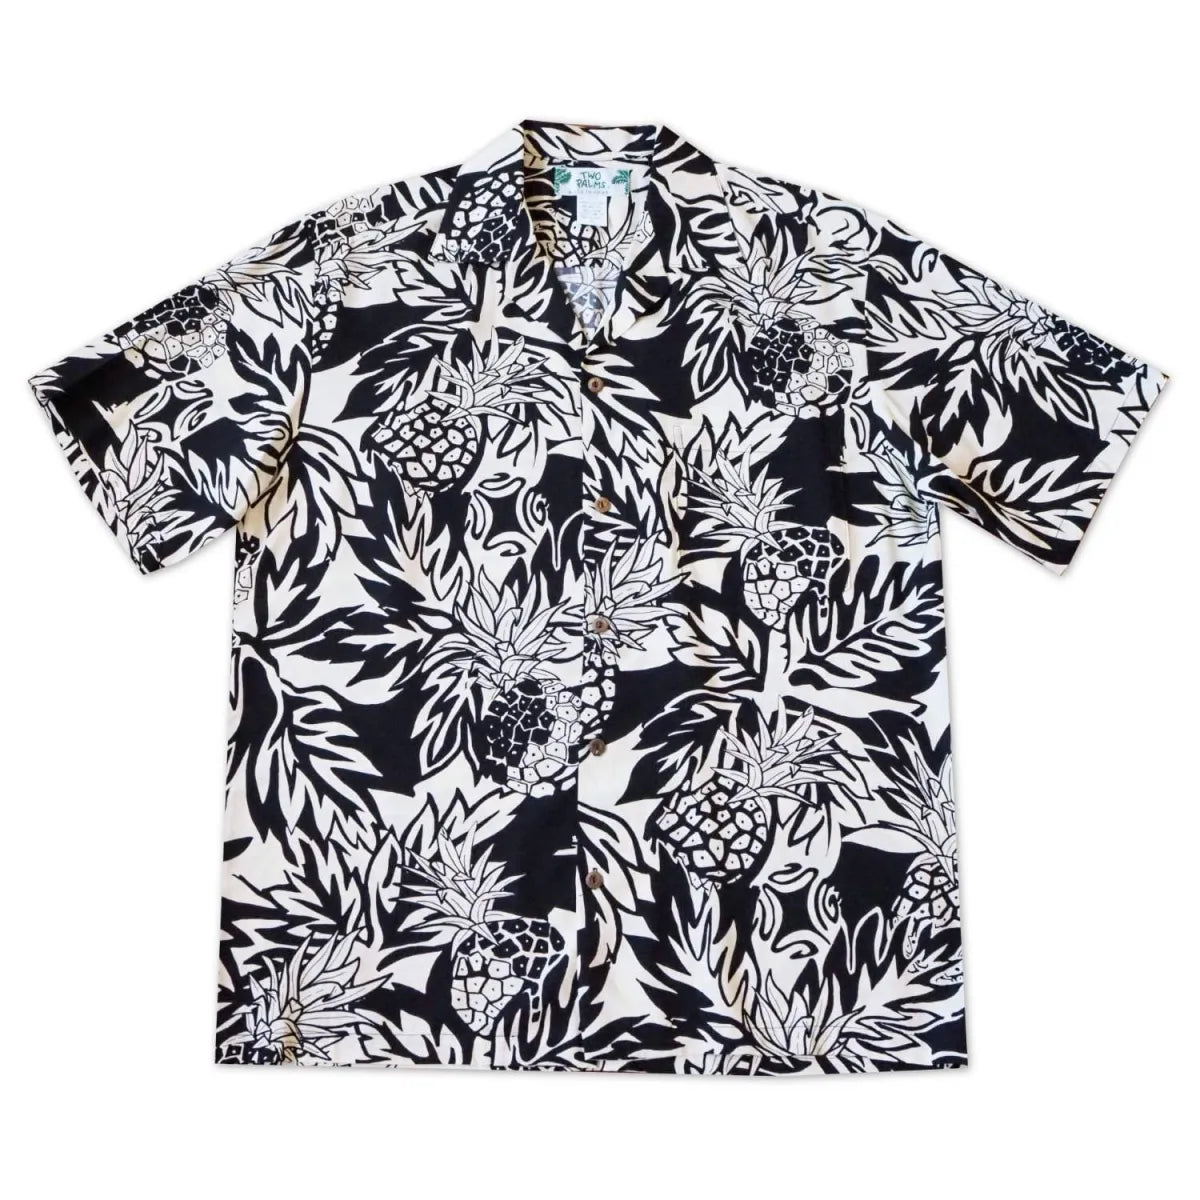 Wild pineapple black hawaiian rayon shirt